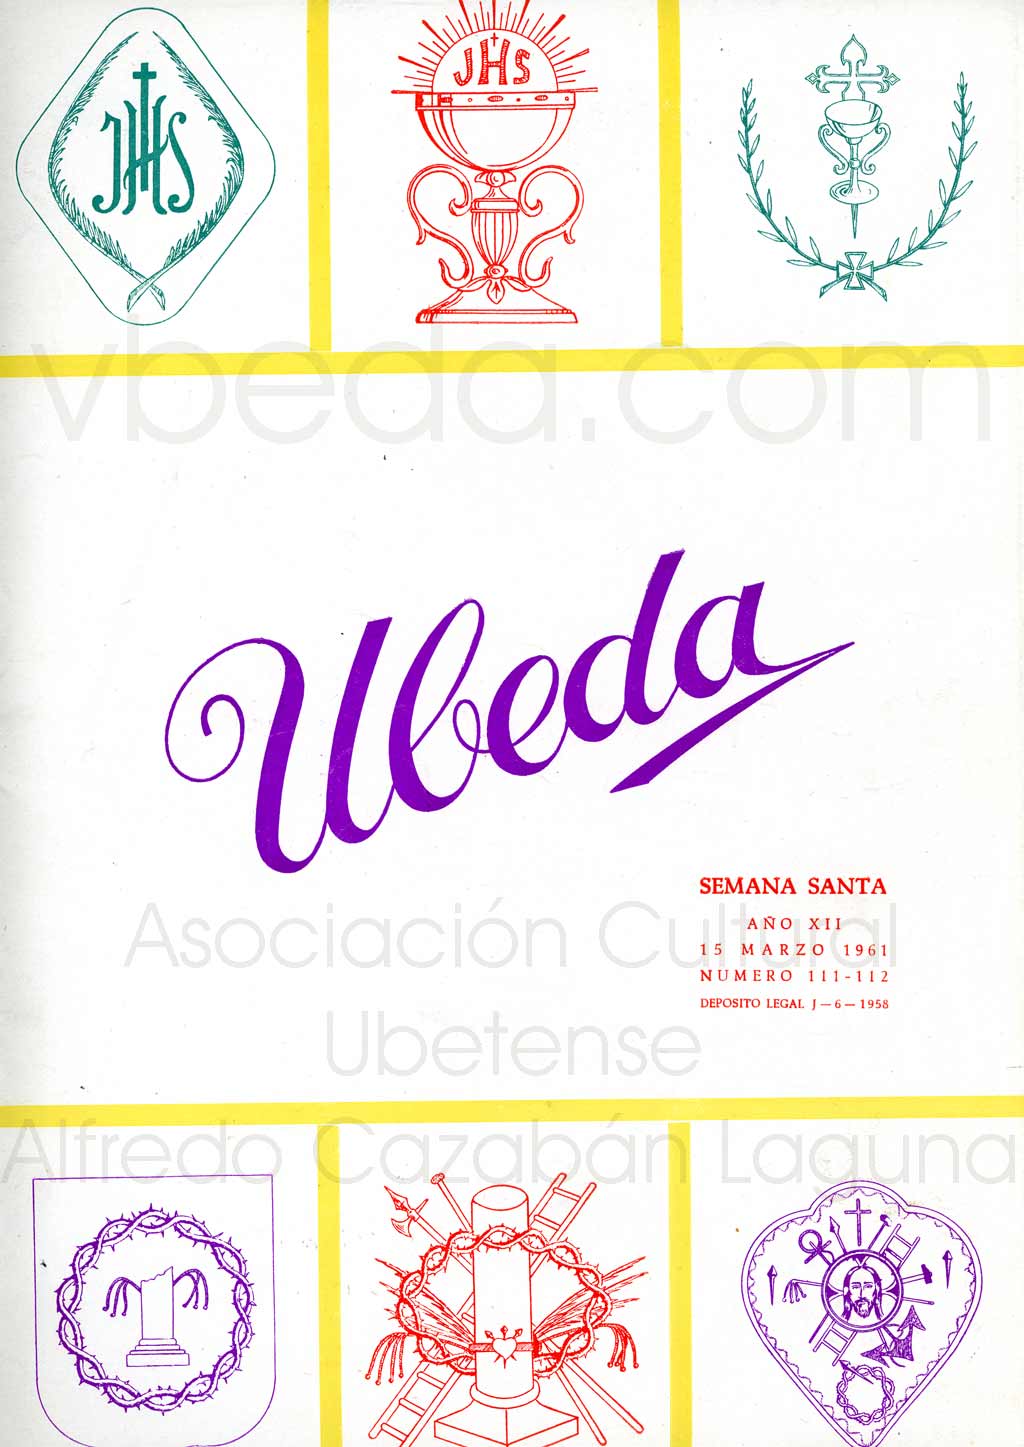 Revista Vbeda. Ao 12. N 111 y 112 de 15 de marzo de 1961